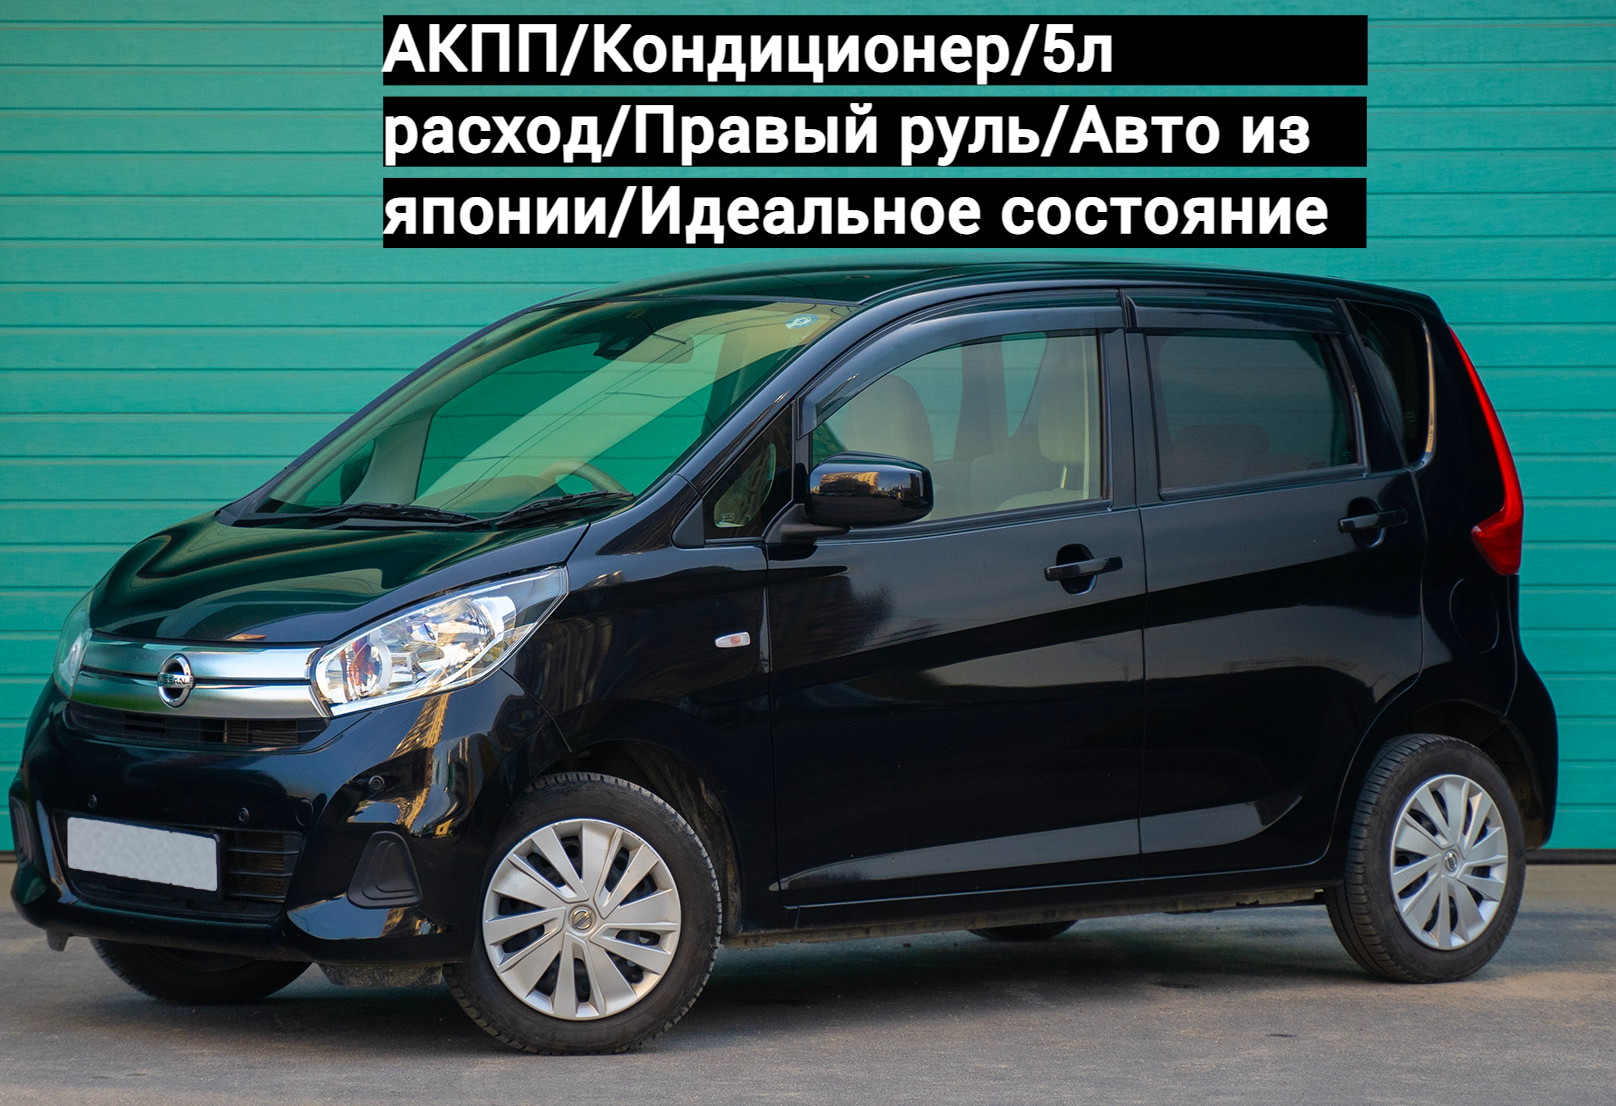 Аренда nissan dayz эконом класса 2018 года в городе Москва Парнас от 1500 руб./сутки, передний привод, двигатель: бензин, объем 0.7 литров, ОСАГО (Мультидрайв), без водителя, недорого - RentRide